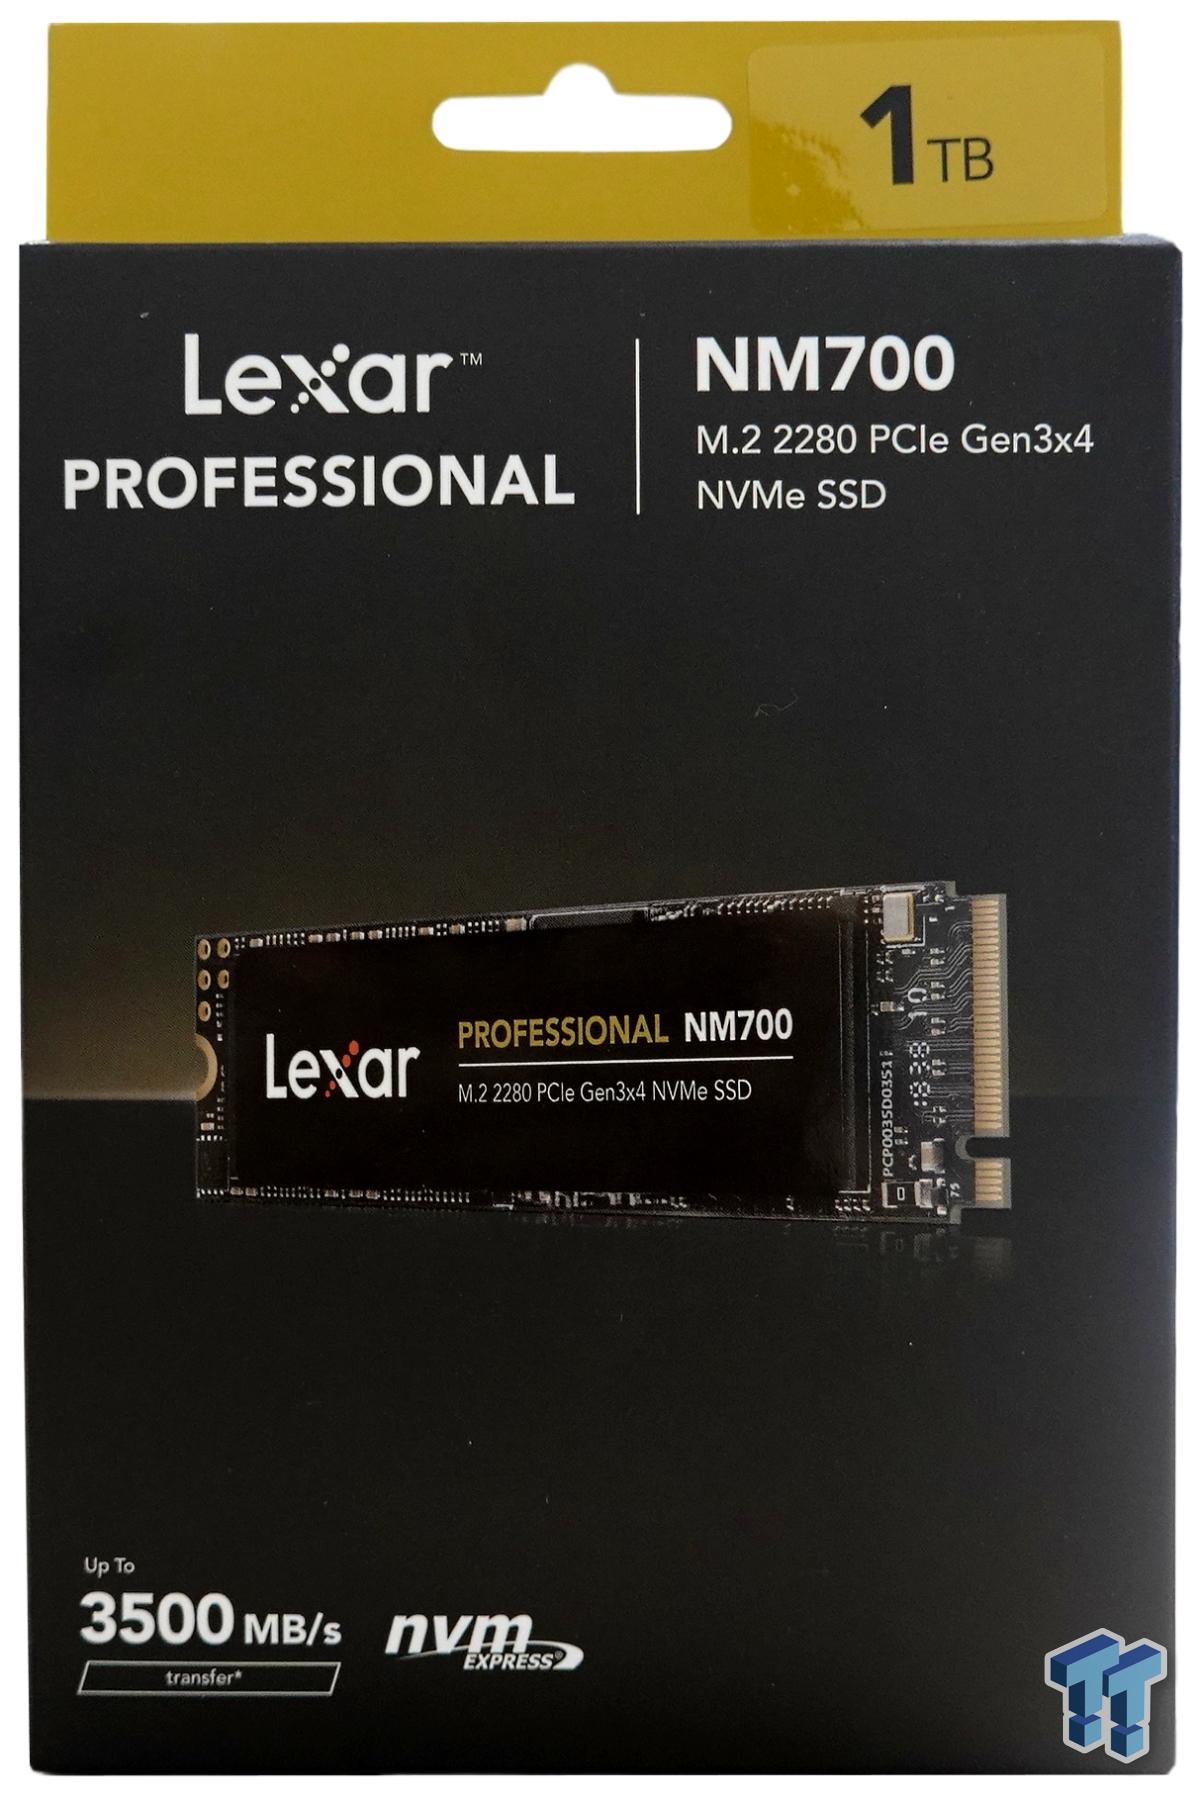 Lexar Professional NM700 1TB M.2 SSD Review